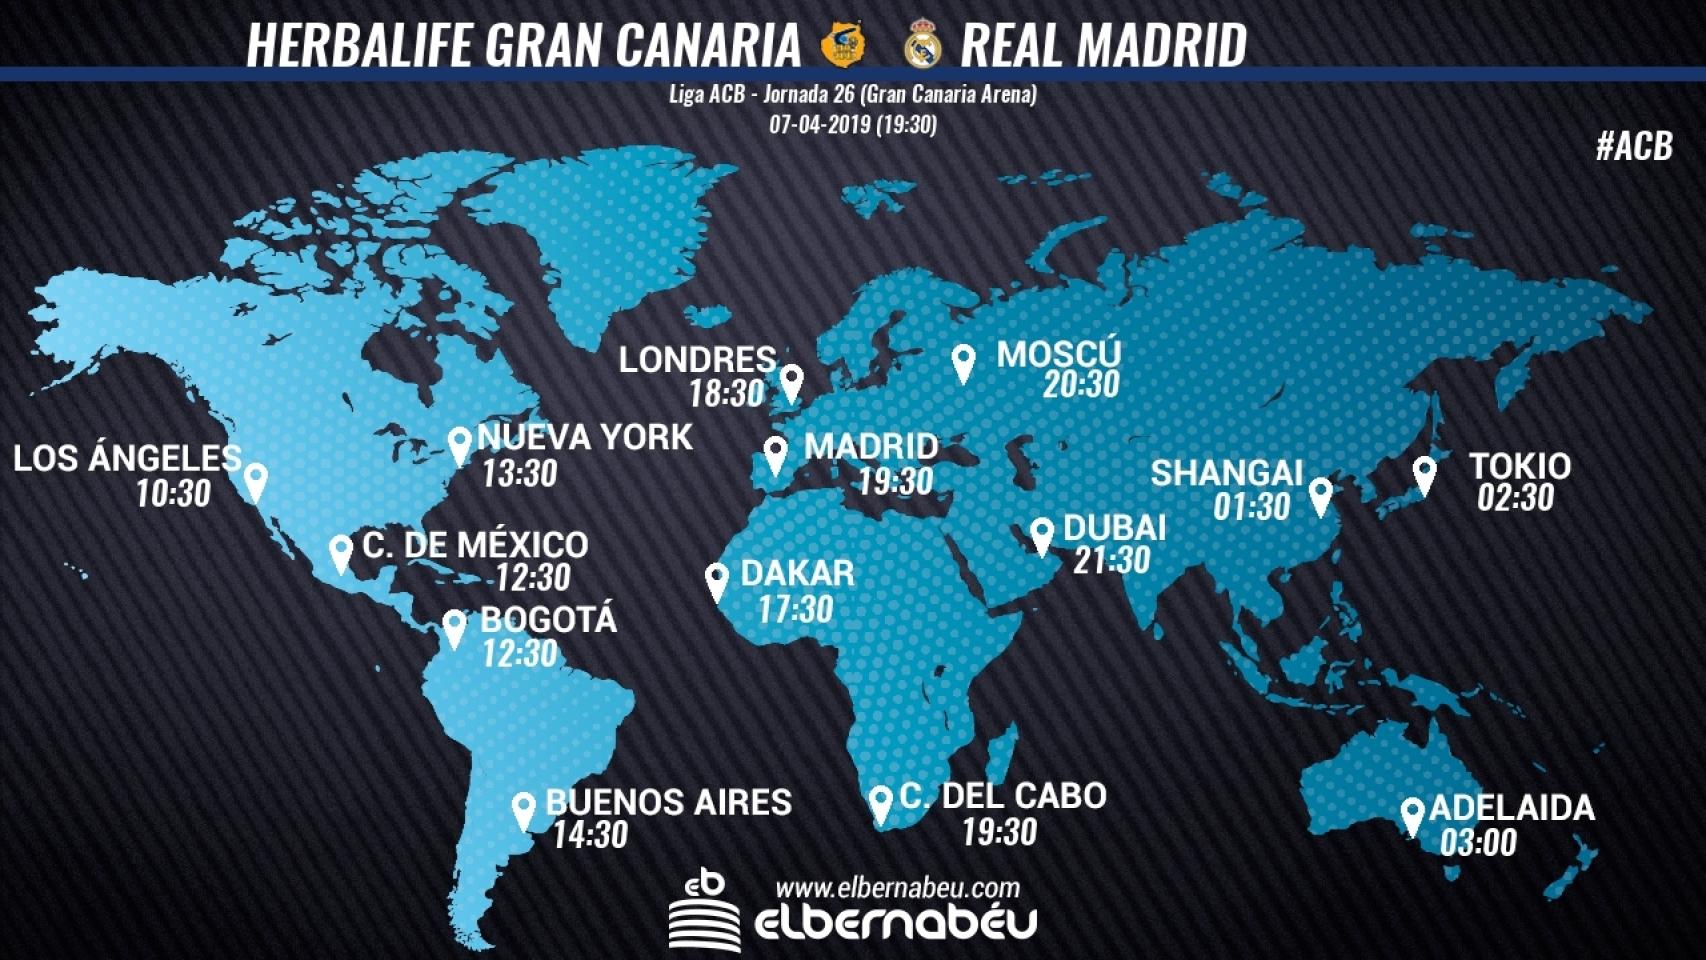 Horario Herbalife Gran Canaria - Real Madrid